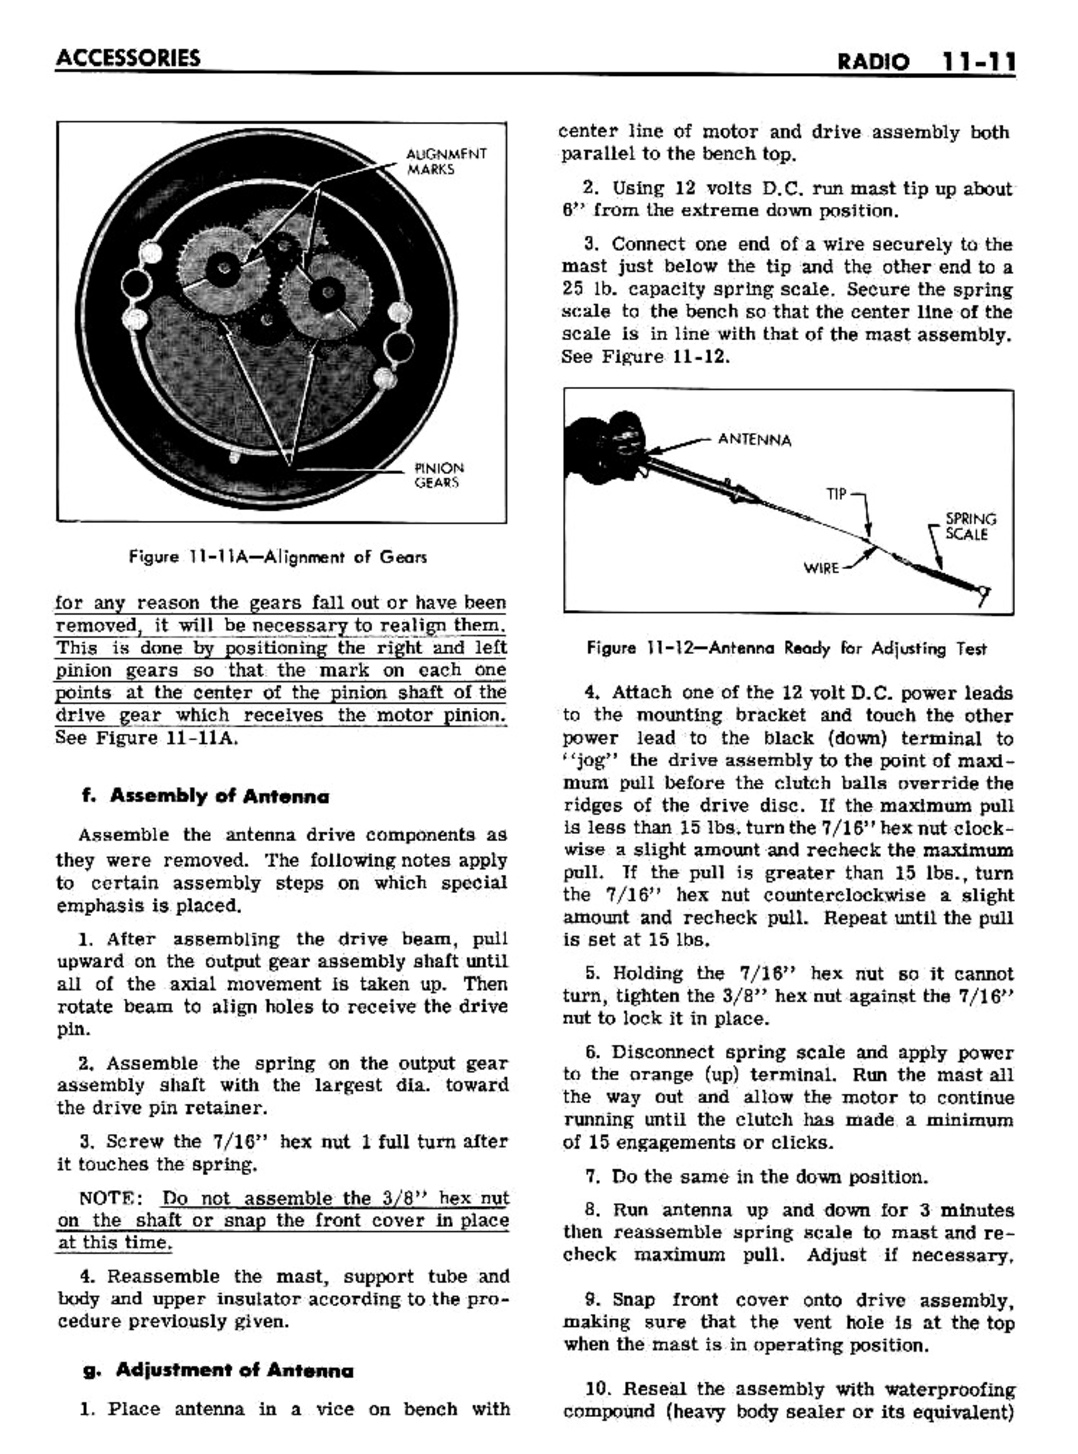 n_11 1961 Buick Shop Manual - Accessories-011-011.jpg